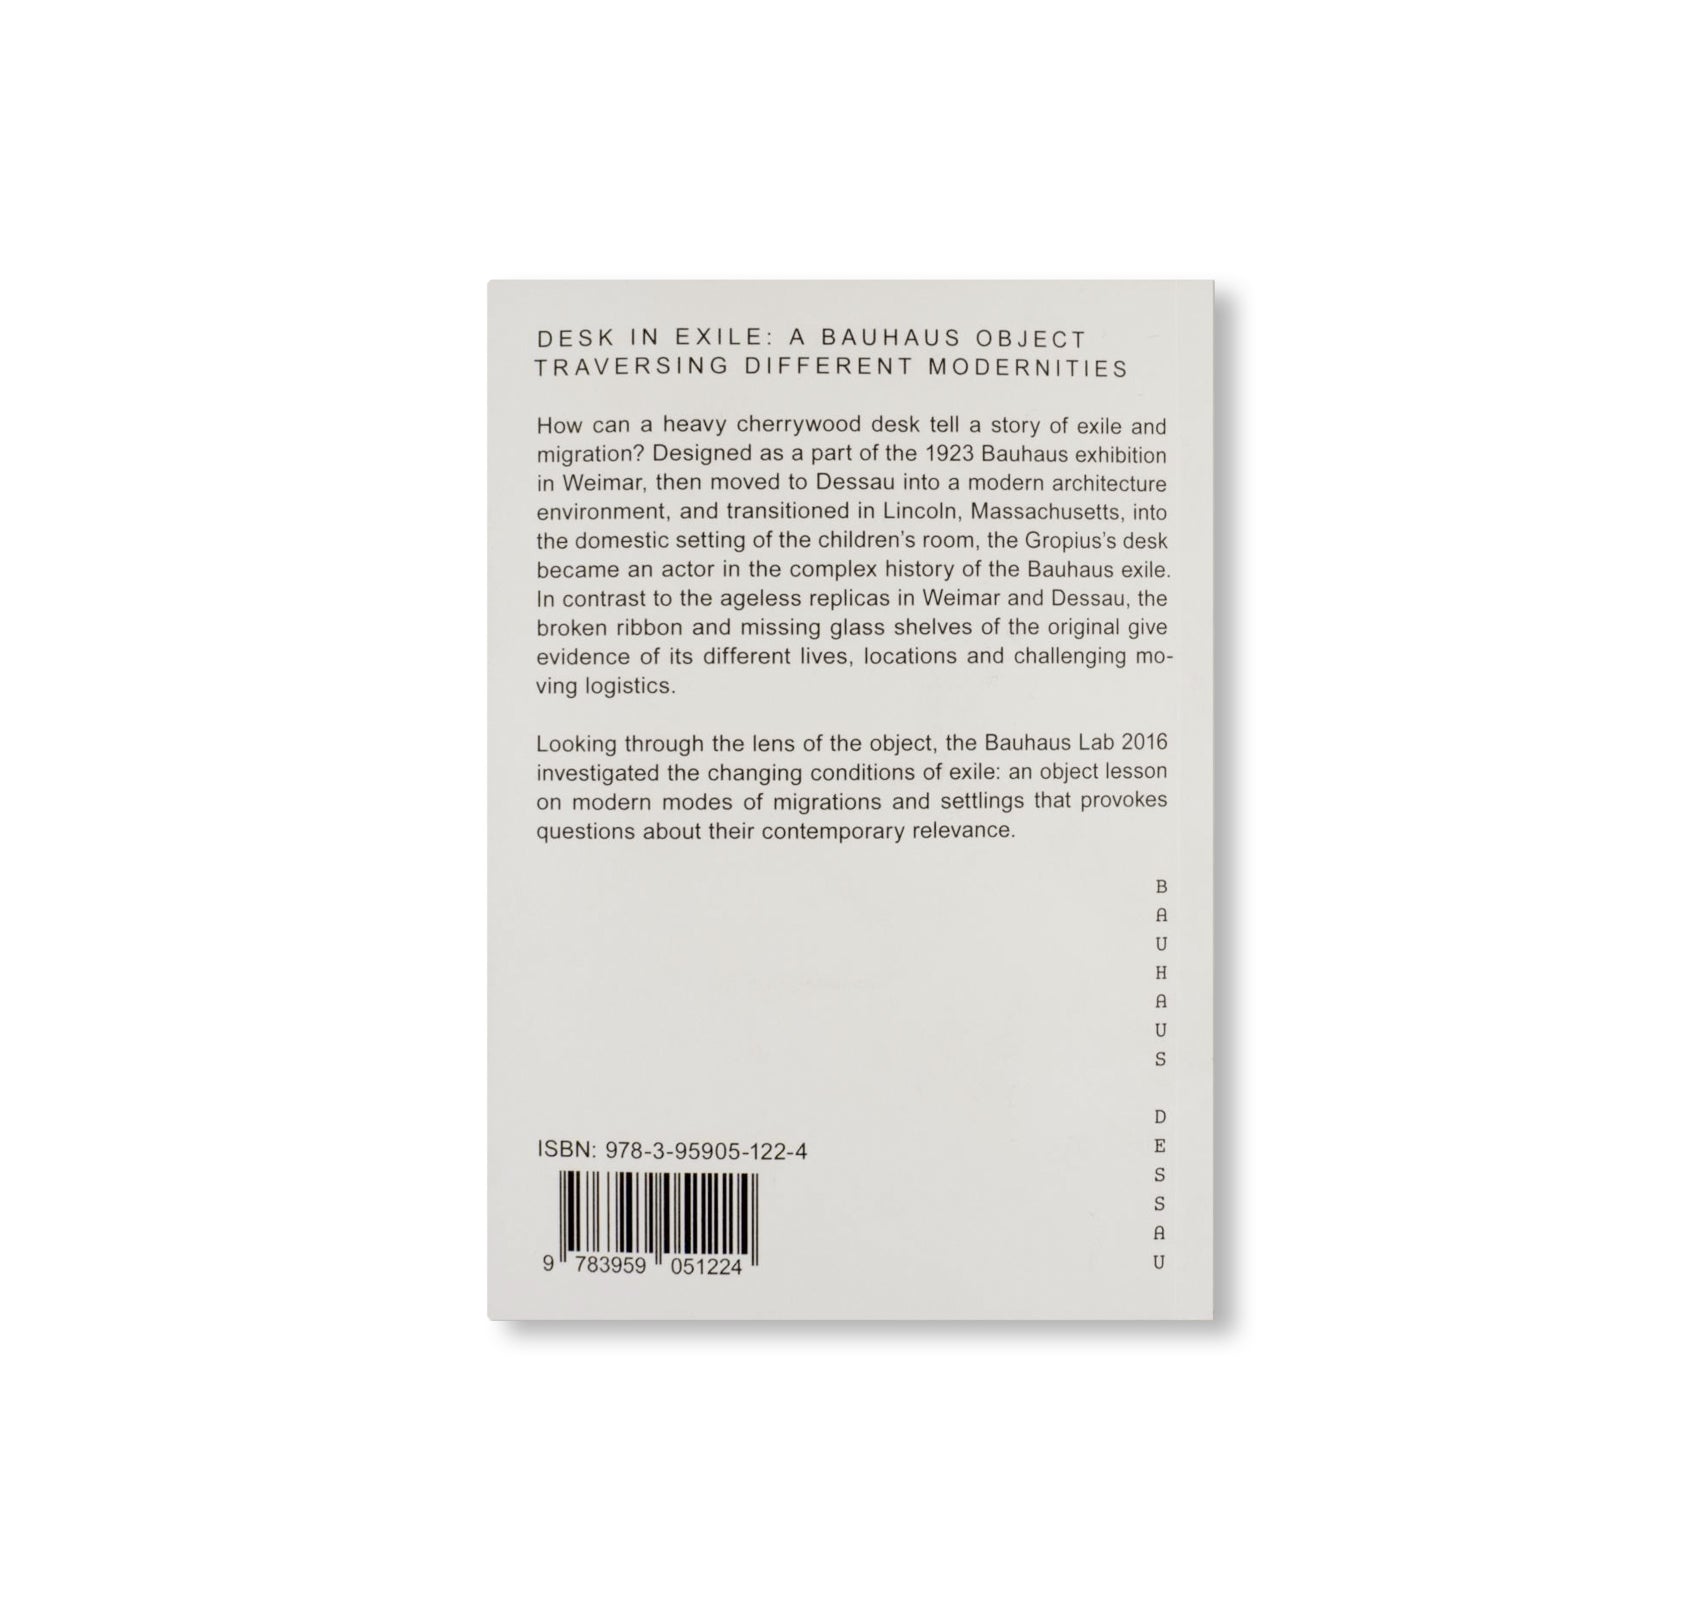 DESK IN EXILE / Bauhaus Paperback 20 by Bauhaus Lab 2016, Stiftung Bauhaus Dessau